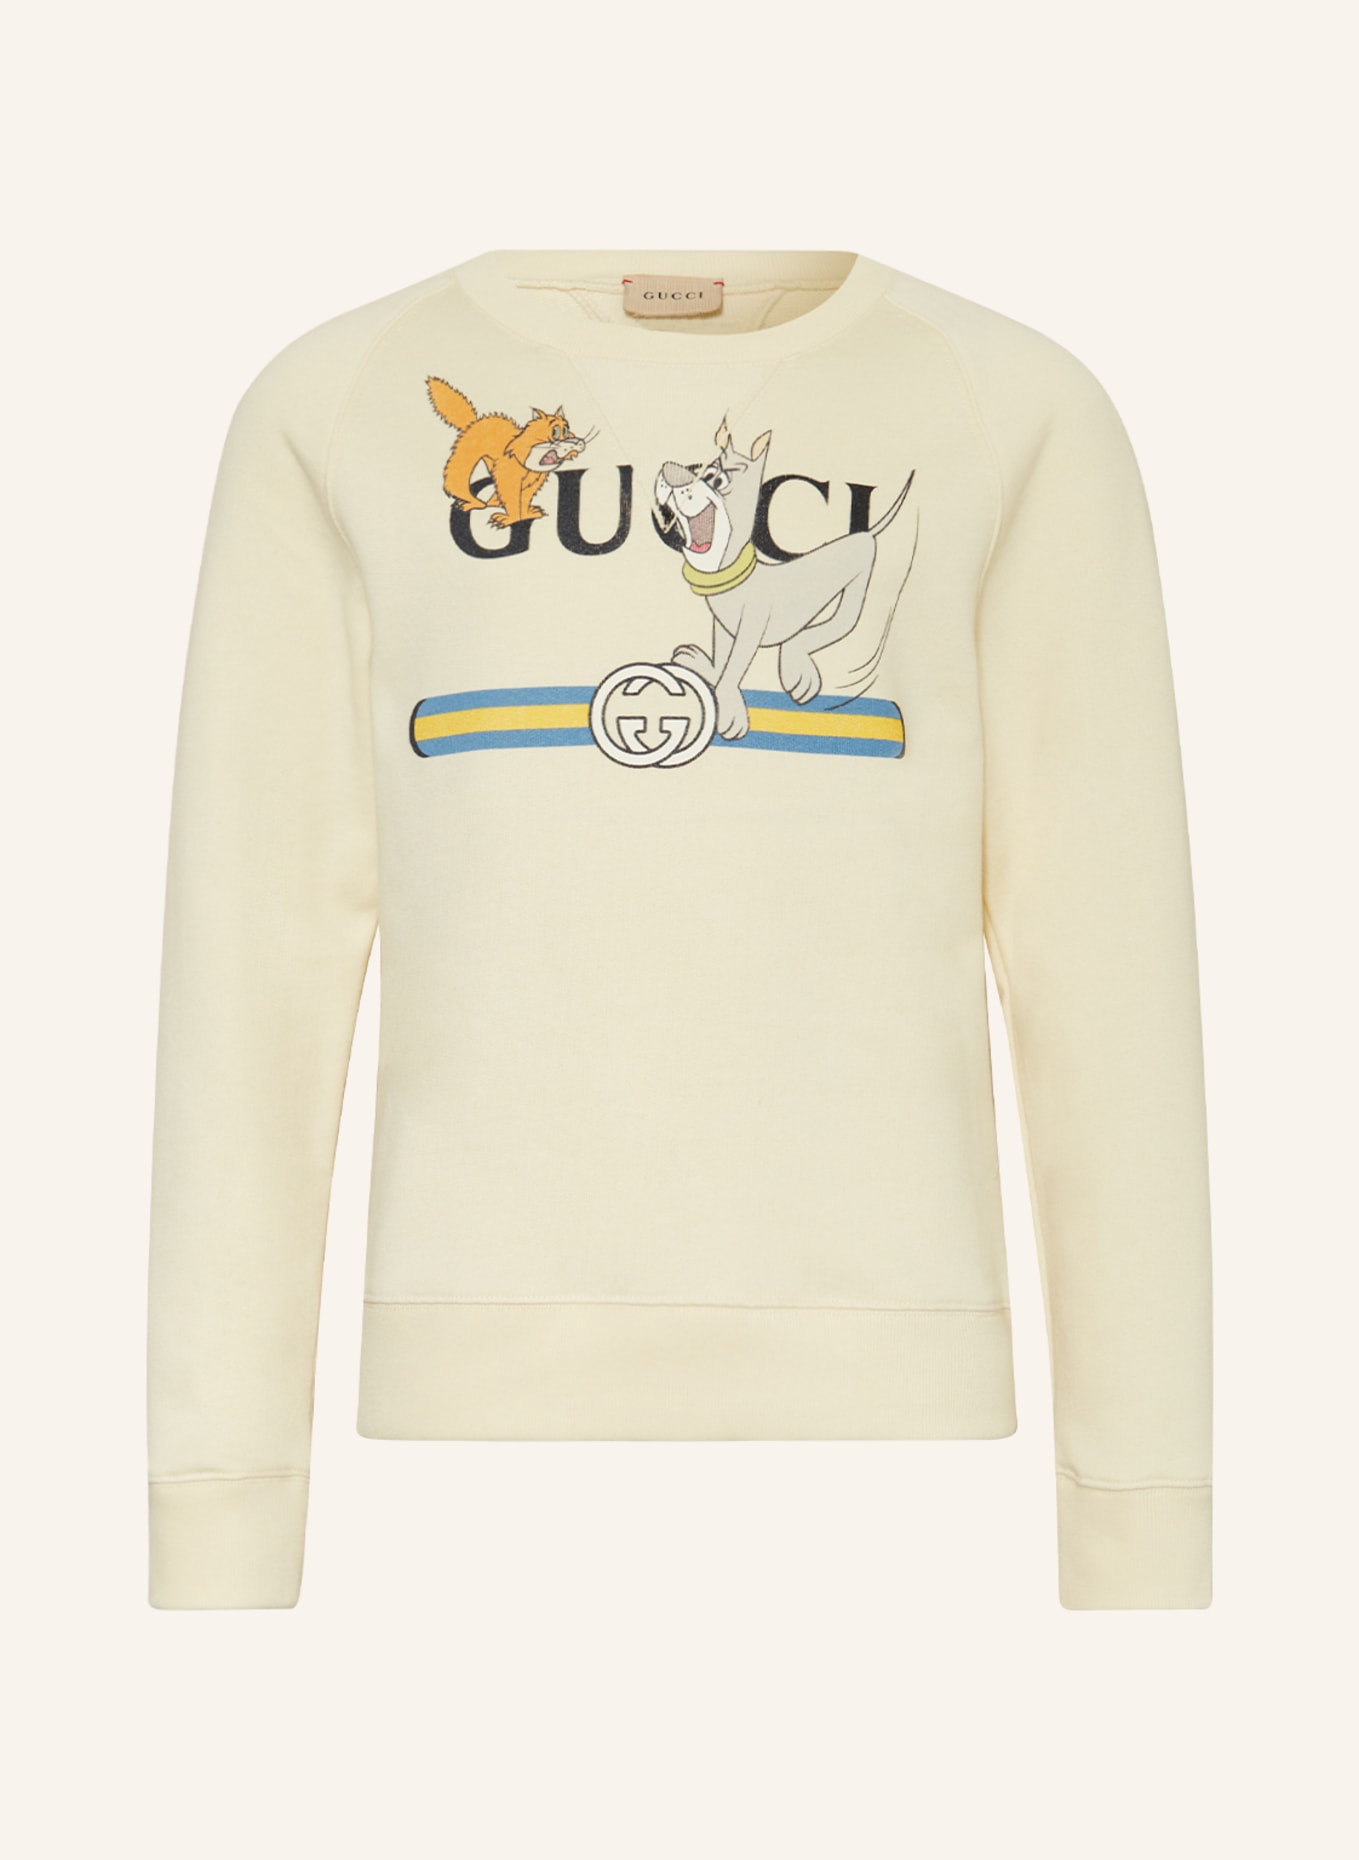 GUCCI Sweatshirt, Farbe: CREME/ SCHWARZ/ ORANGE (Bild 1)